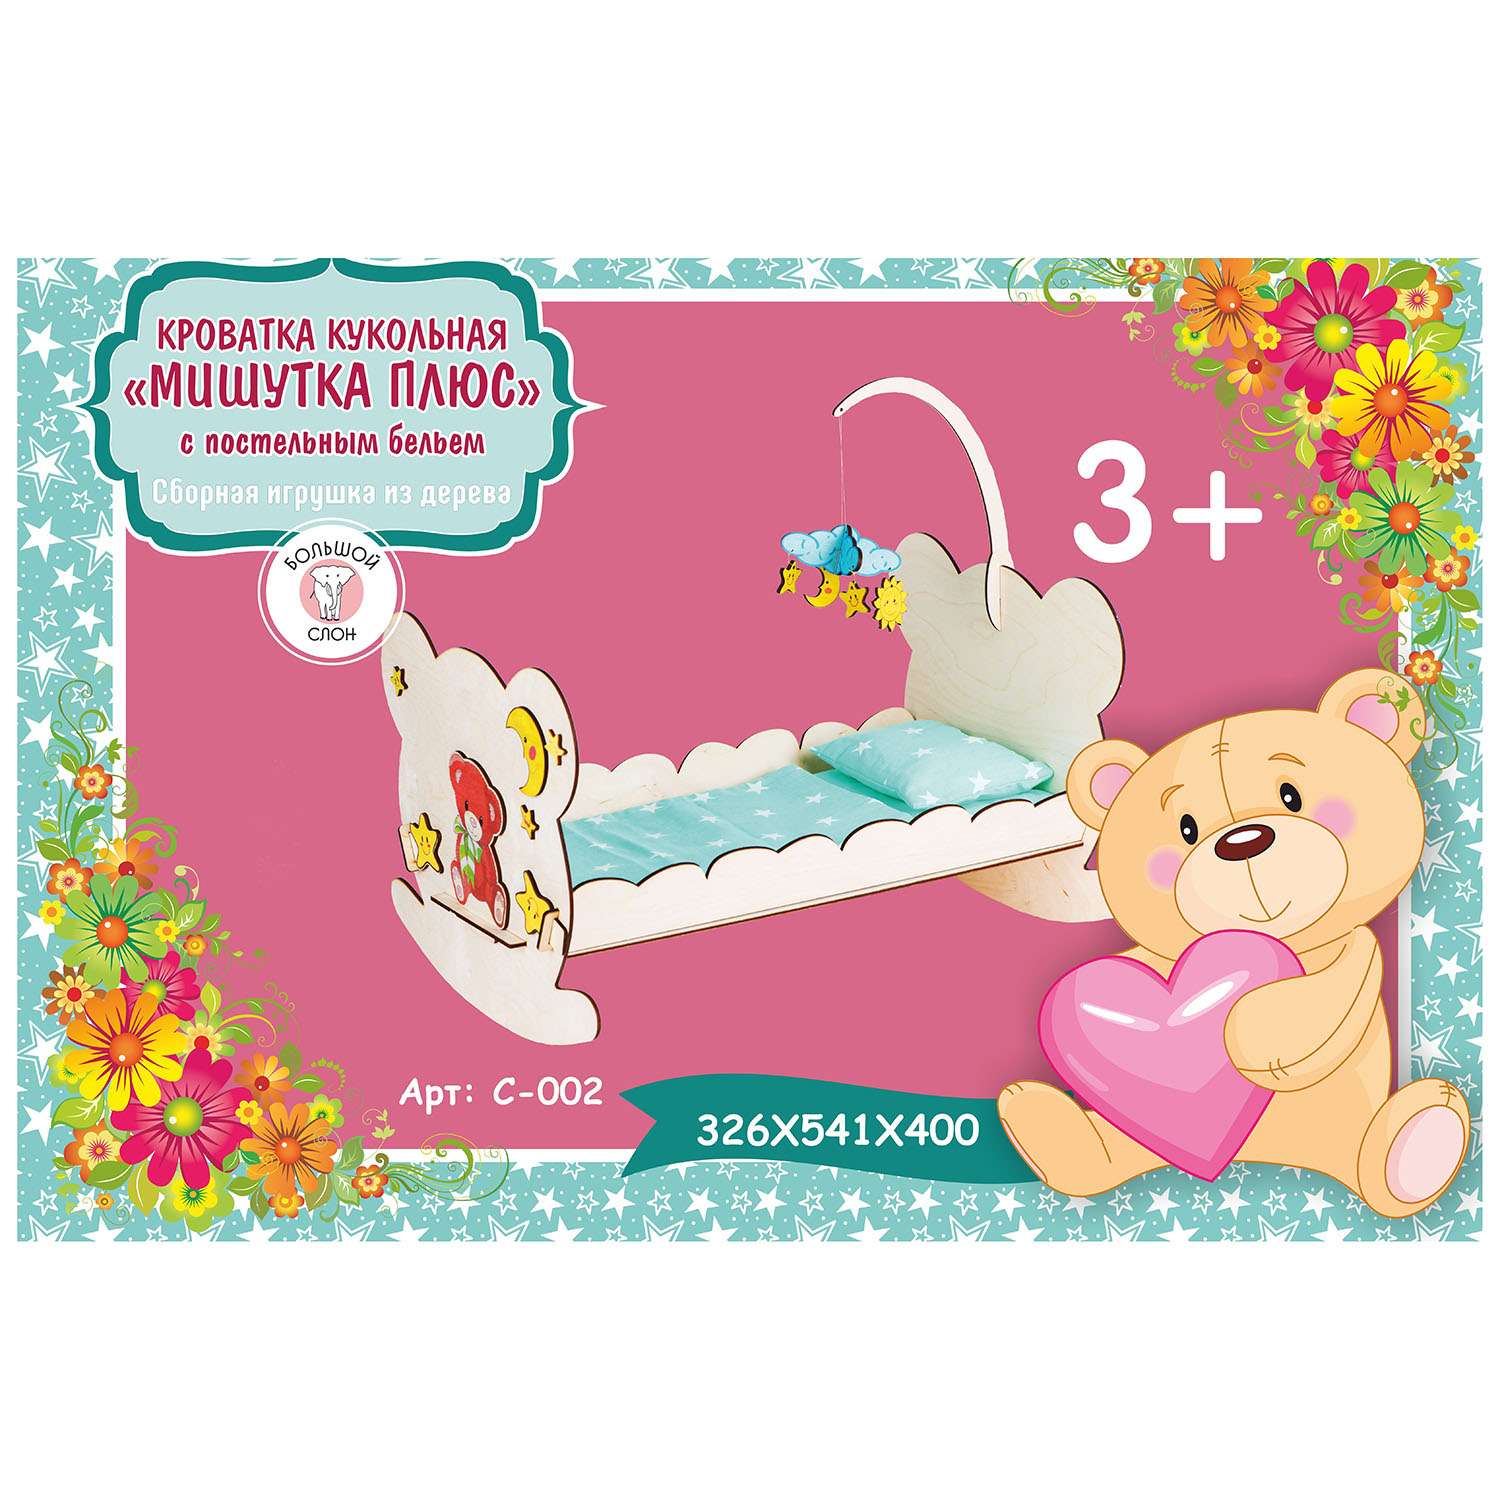 Кроватка для кукол Большой Слон Мишутка плюс с текстилем из дерева С-002 - фото 2